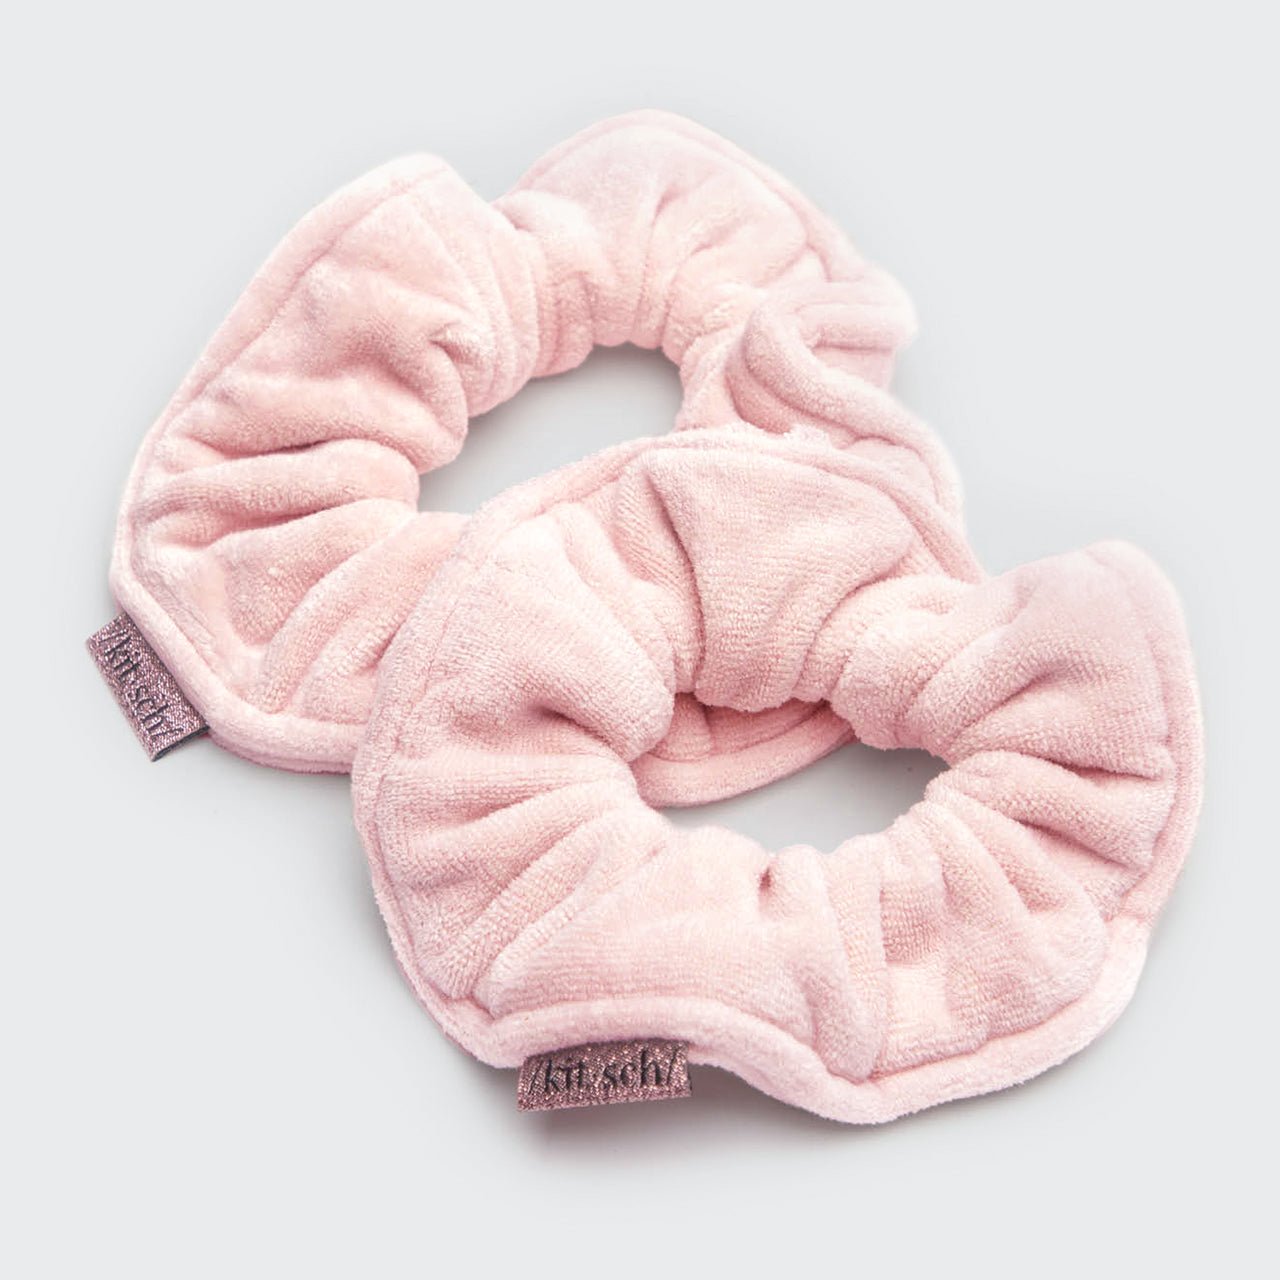 Gepatenteerde Microfiber Handdoek Scrunchies - Blush